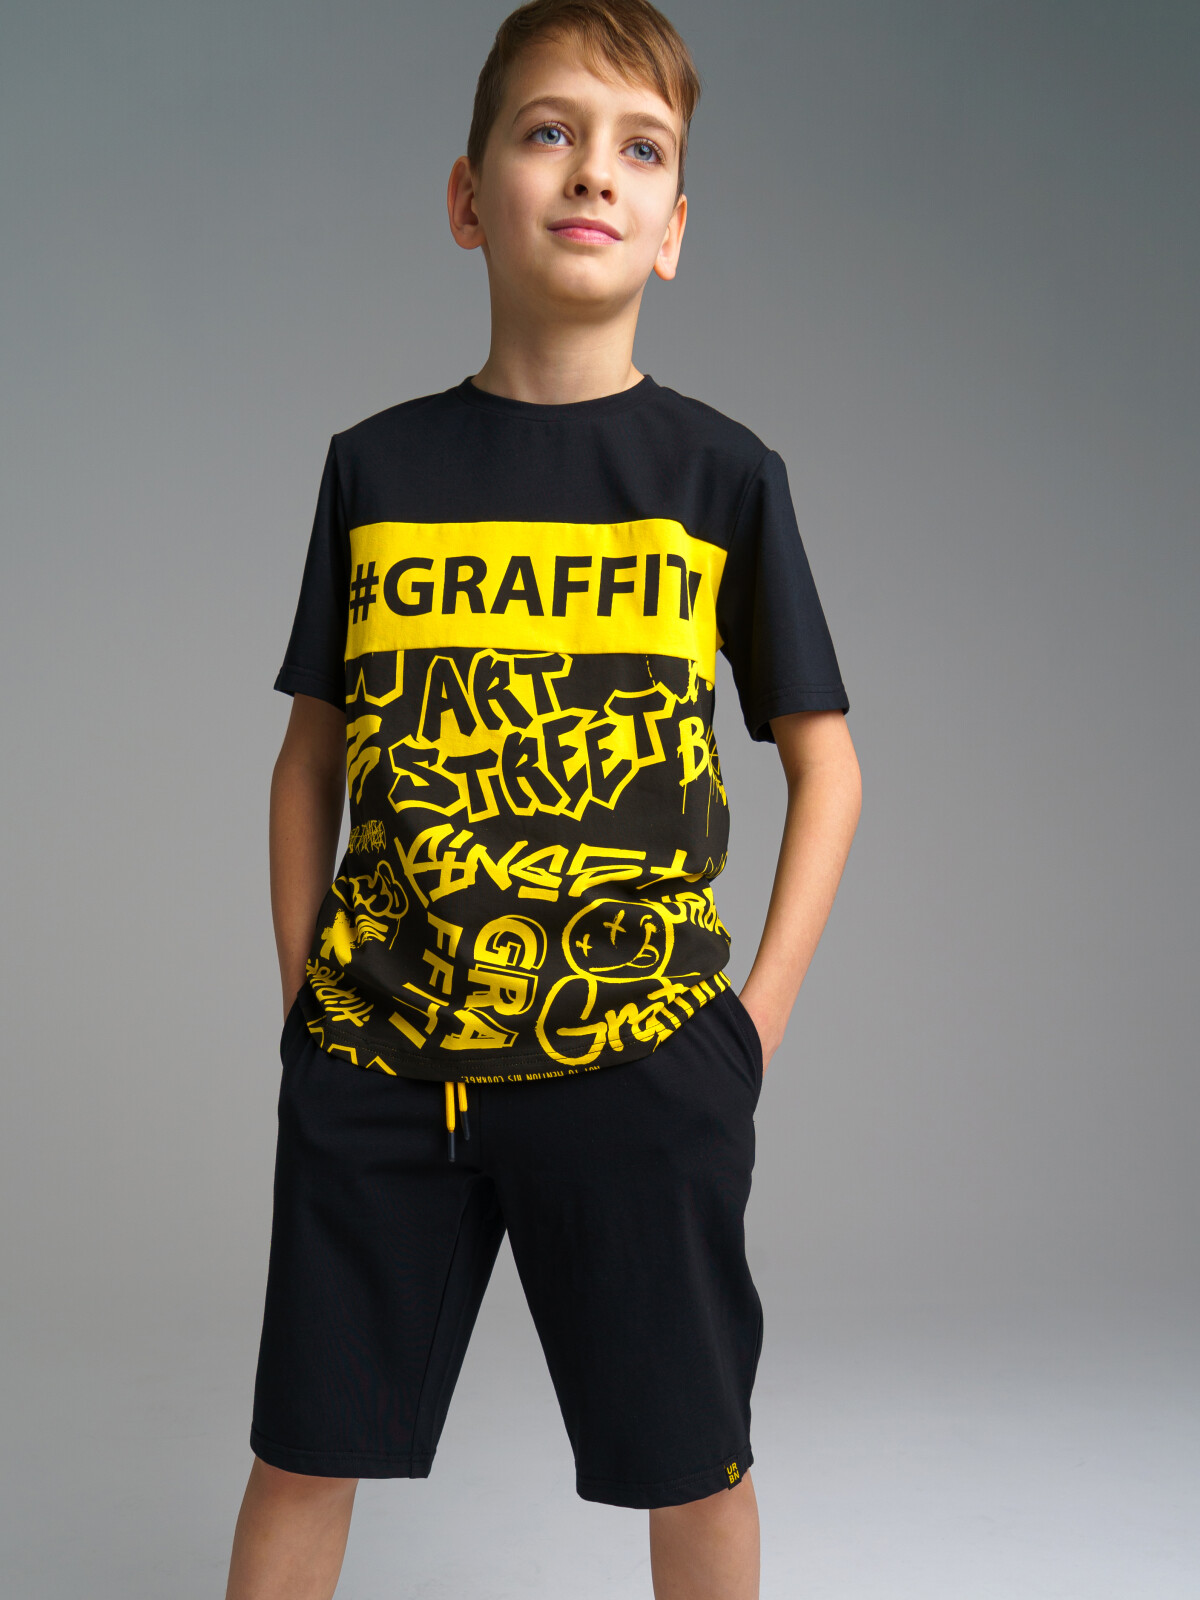 Комплект: футболка, шорты для мальчика PlayToday 32211064 черный, жёлтый, 146